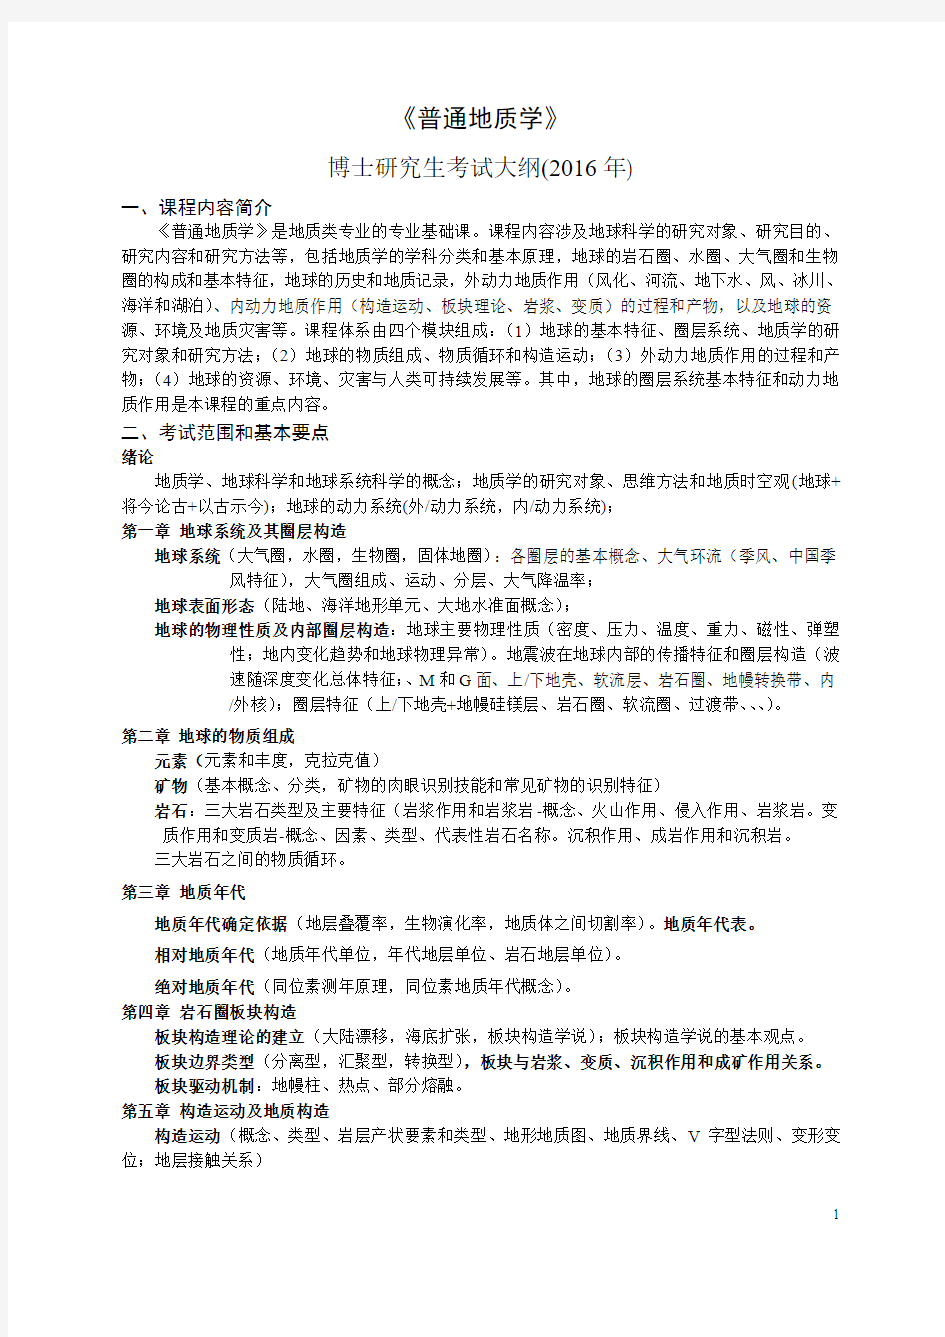 中国地质大学普通地质学学考试提纲